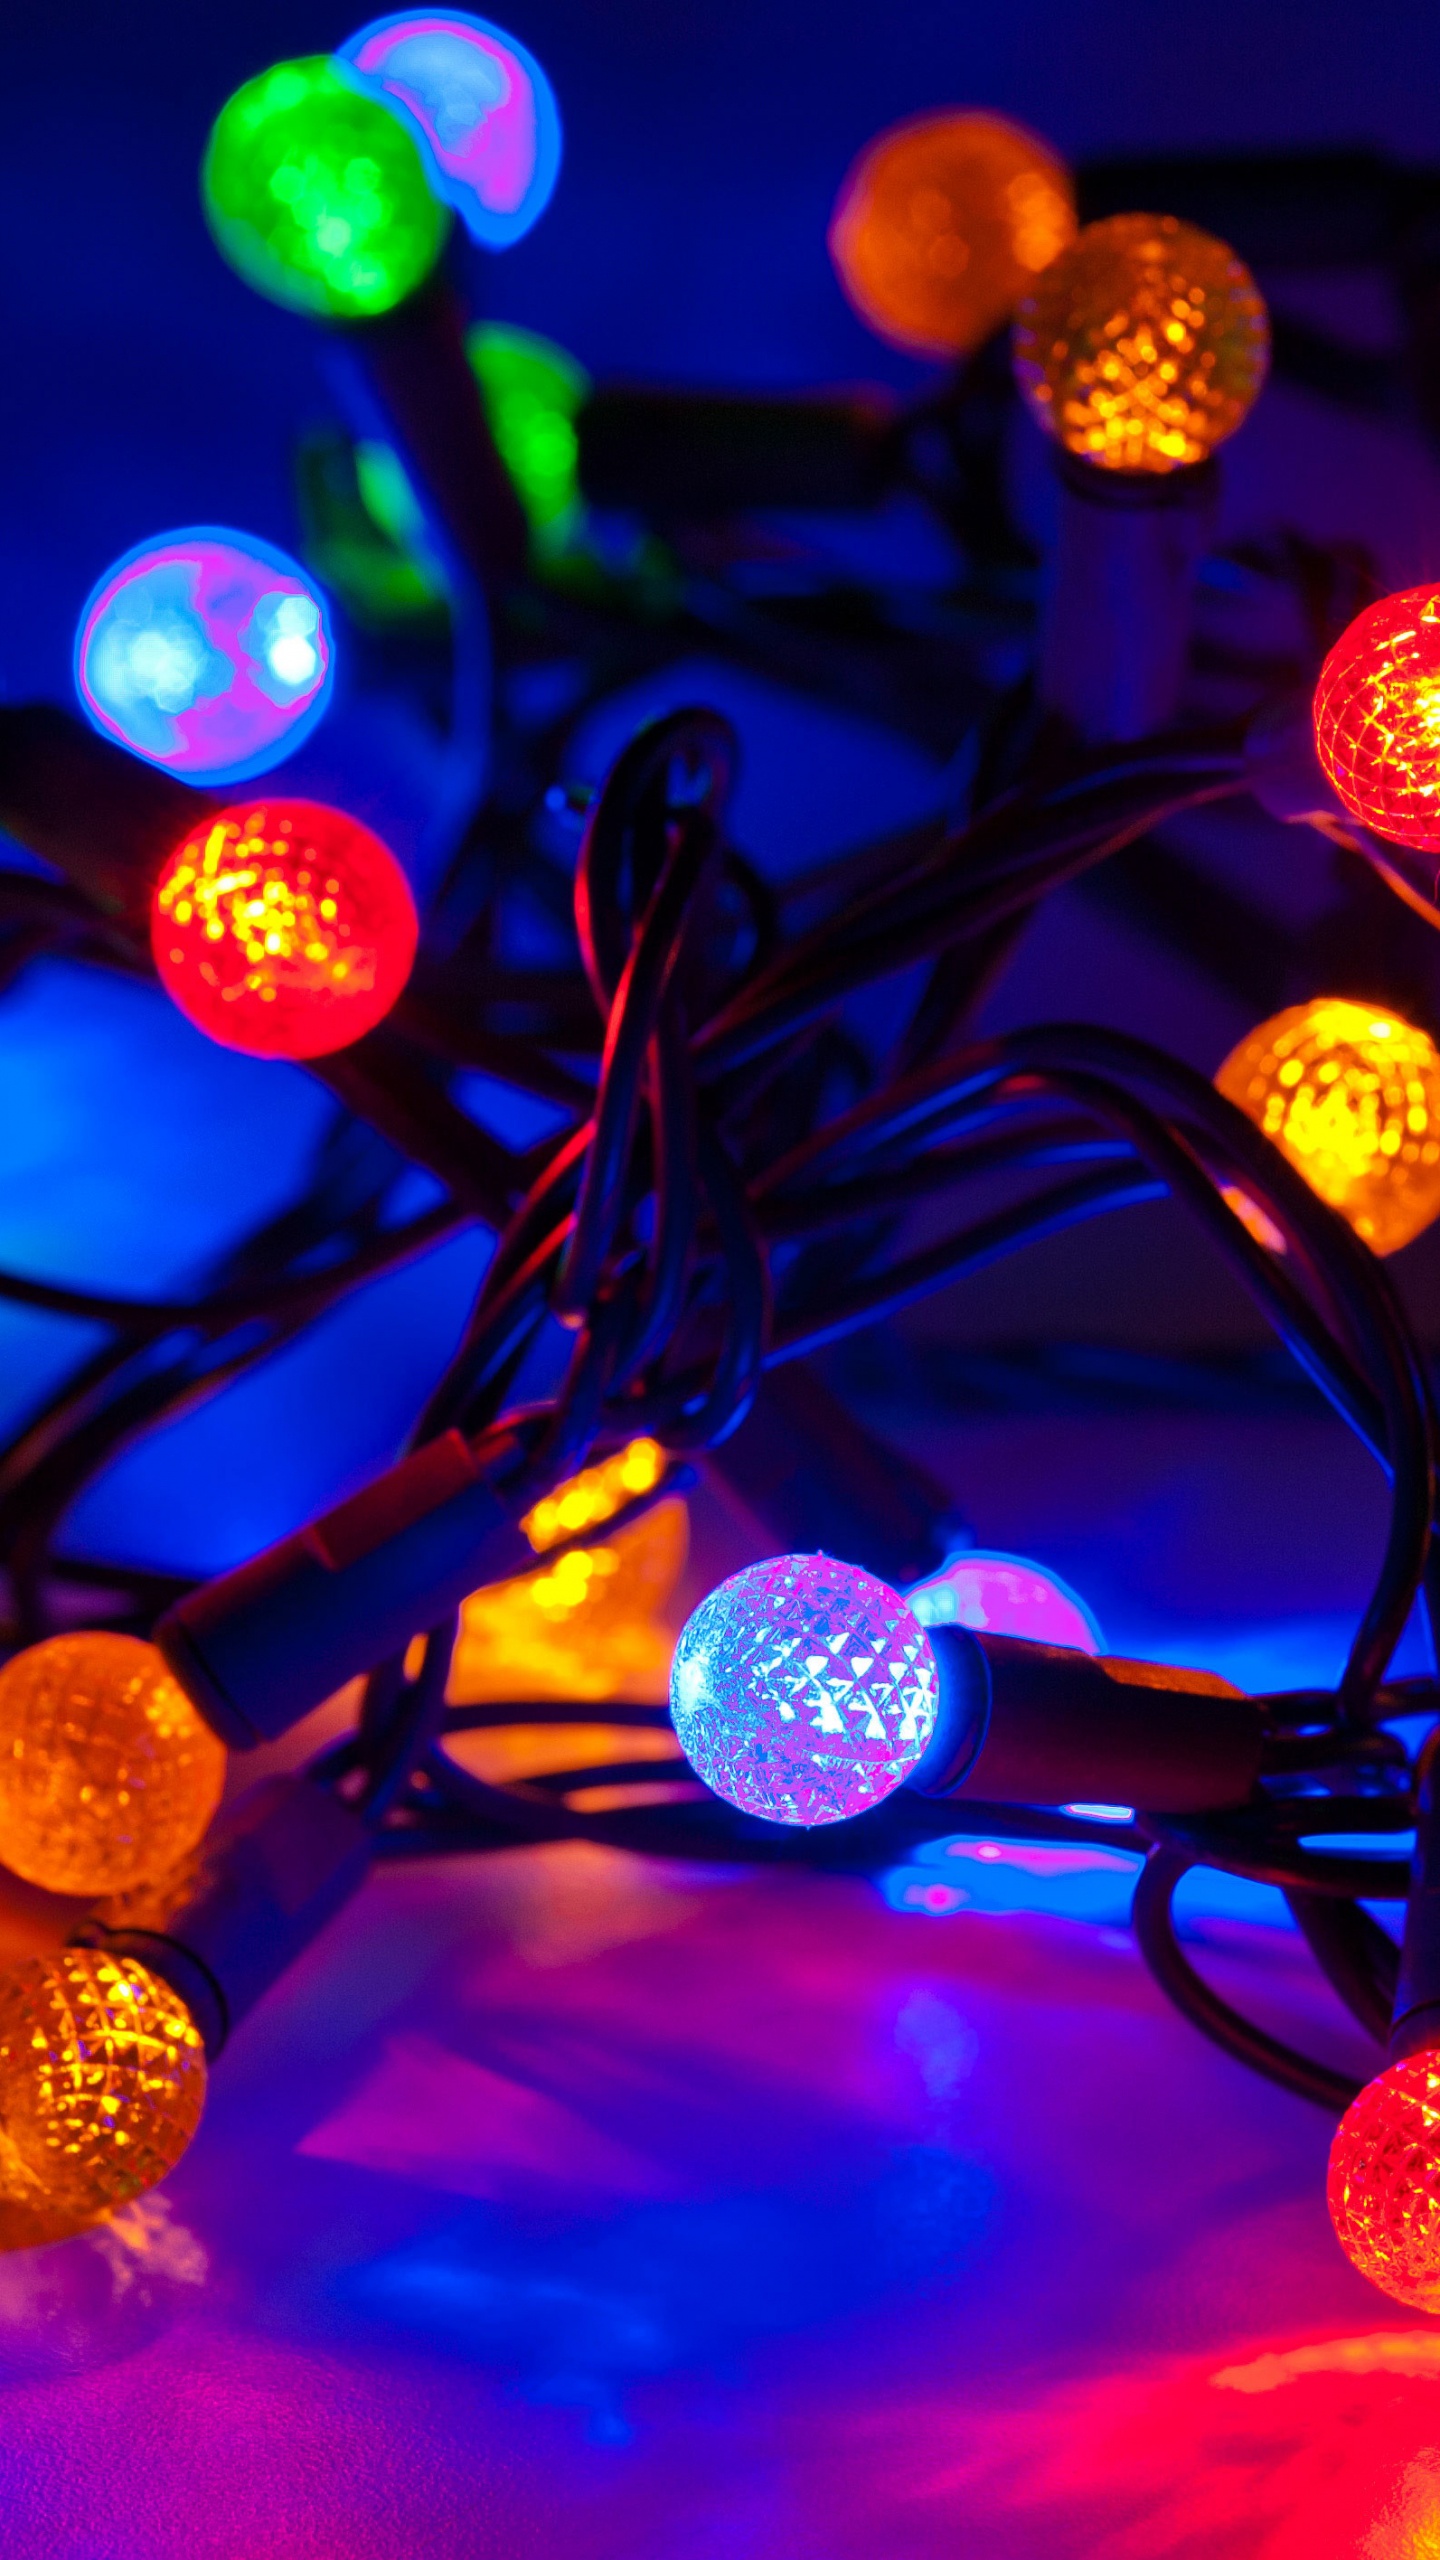 圣诞彩灯, 圣诞节那天, 光, 圣诞装饰, 发光二极管 壁纸 1440x2560 允许